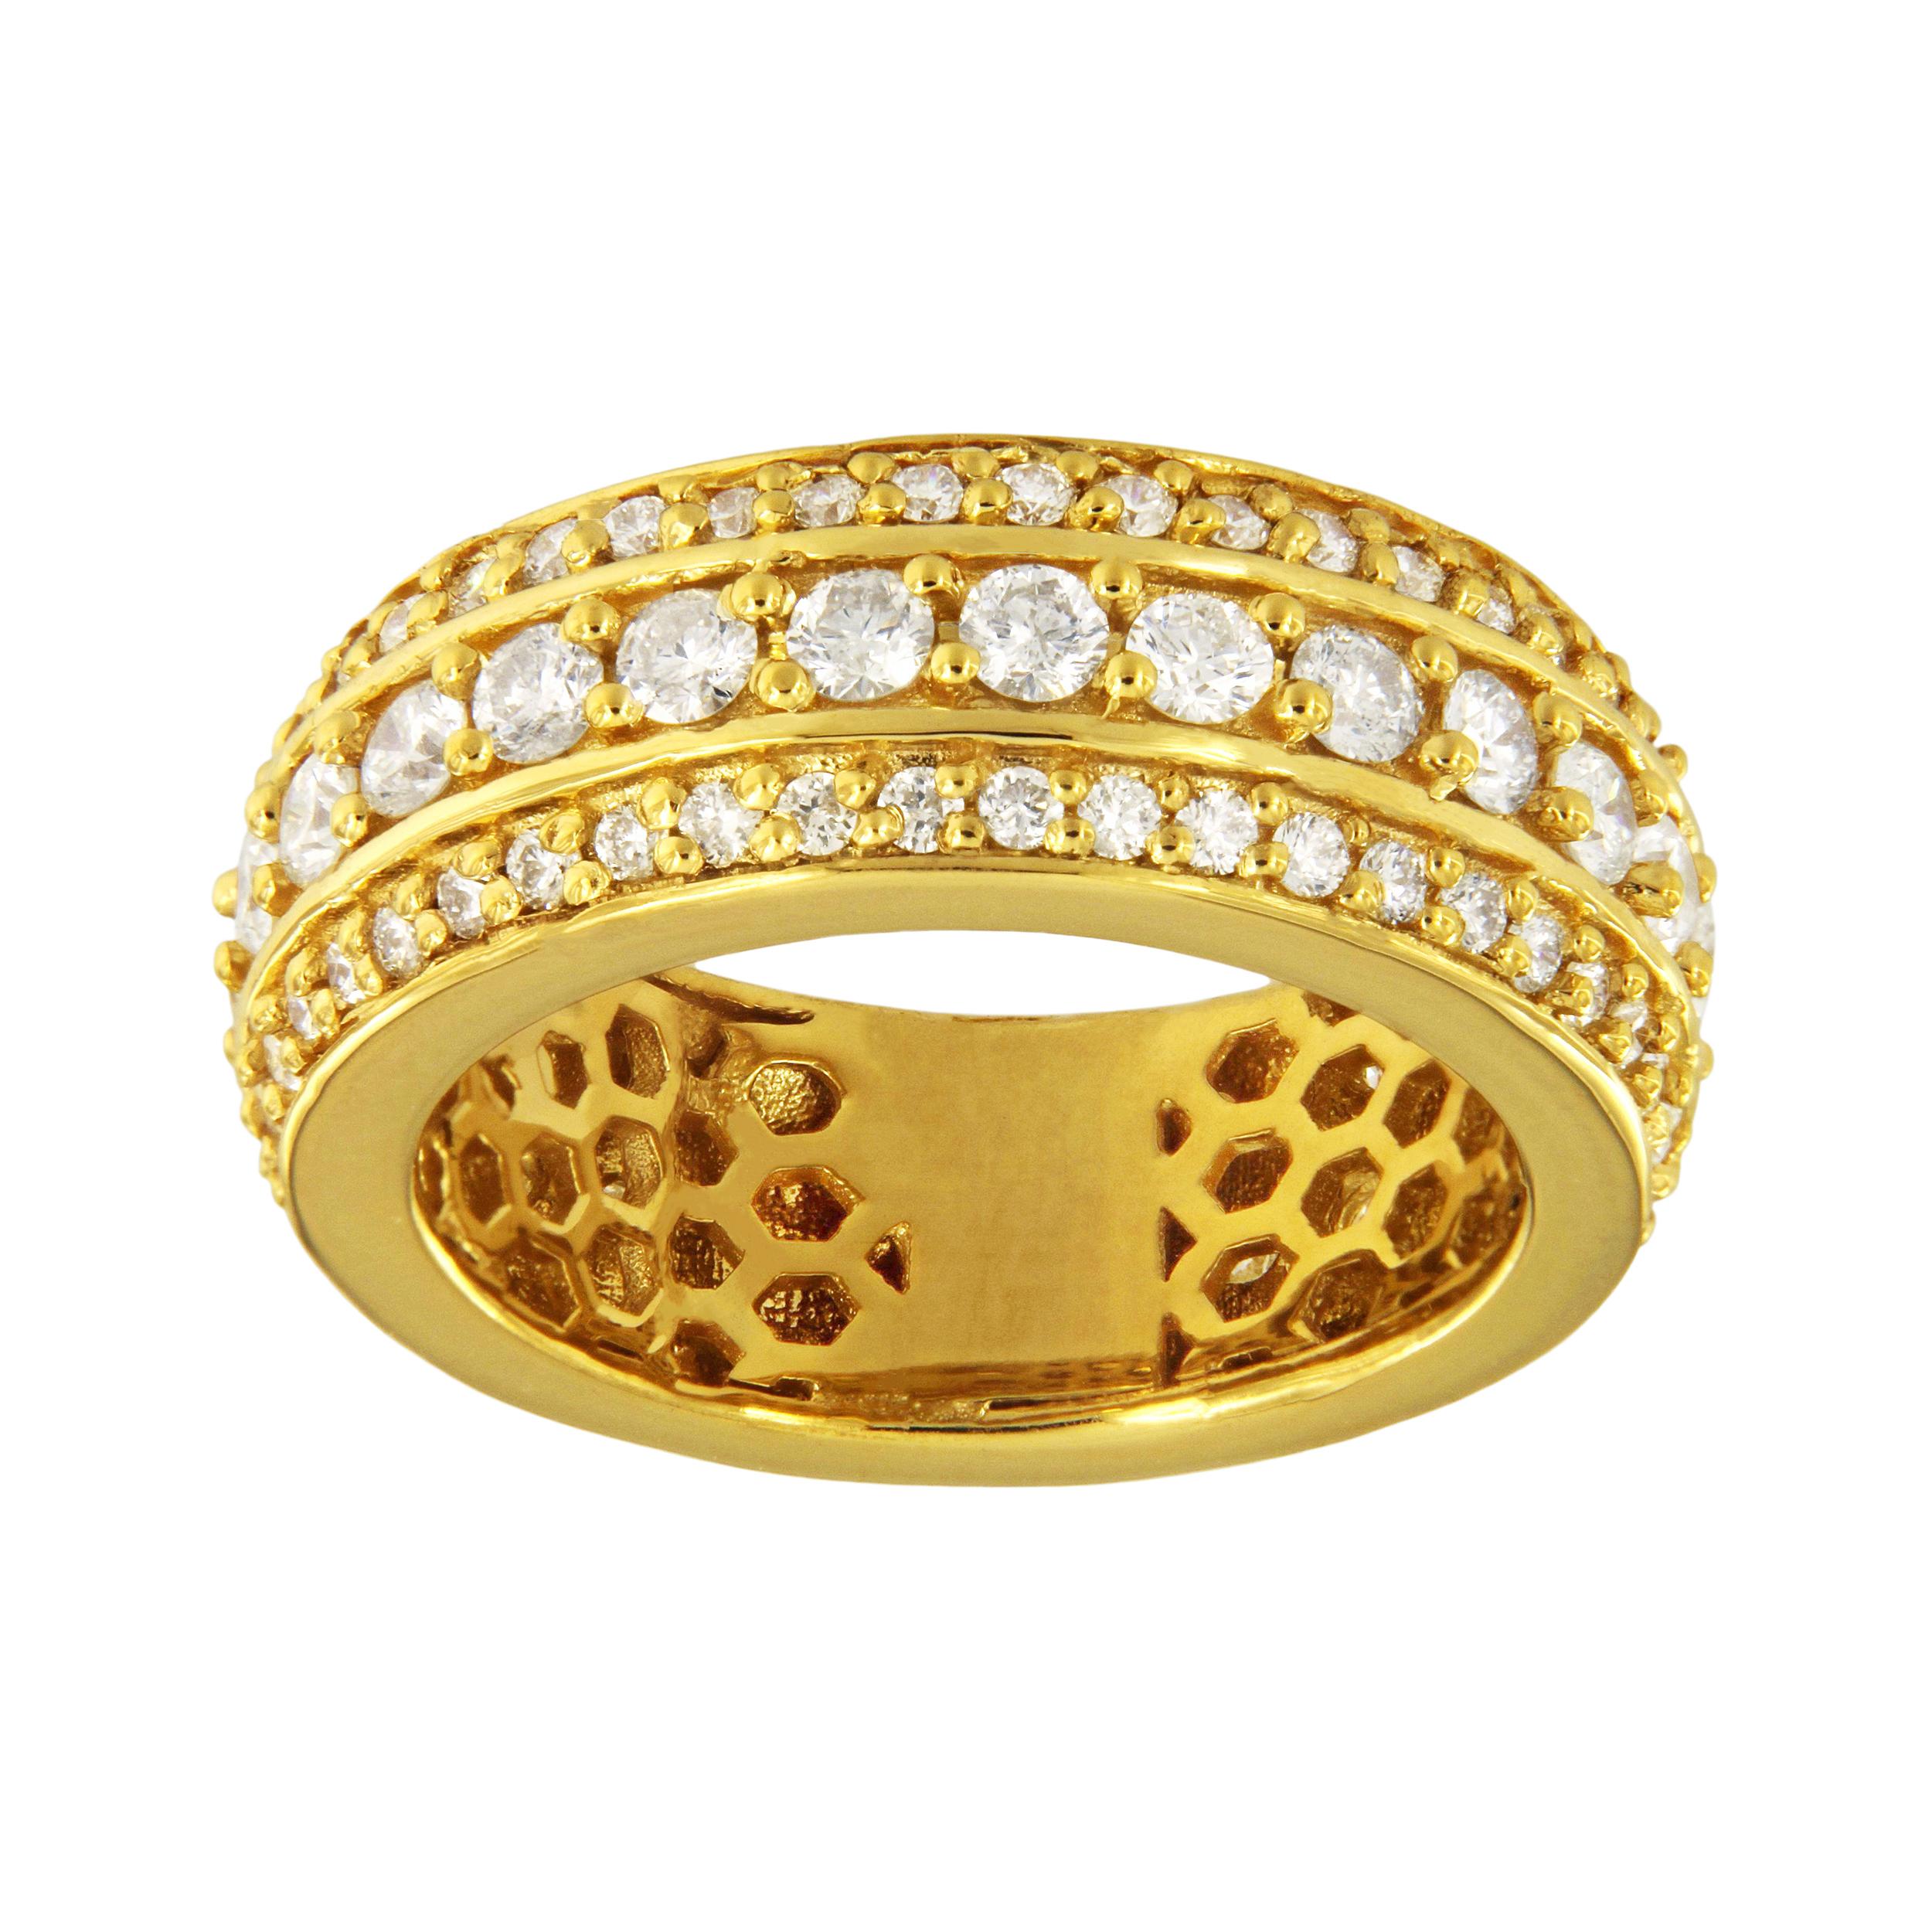 Or jaune 14k
Taille de la bague : 10
Largeur de l'anneau : 9,2 mm
Poids de l'anneau : 14.5gr
Diamant : 3,00 ct, pureté SI1
Prix de vente initial : 4 900